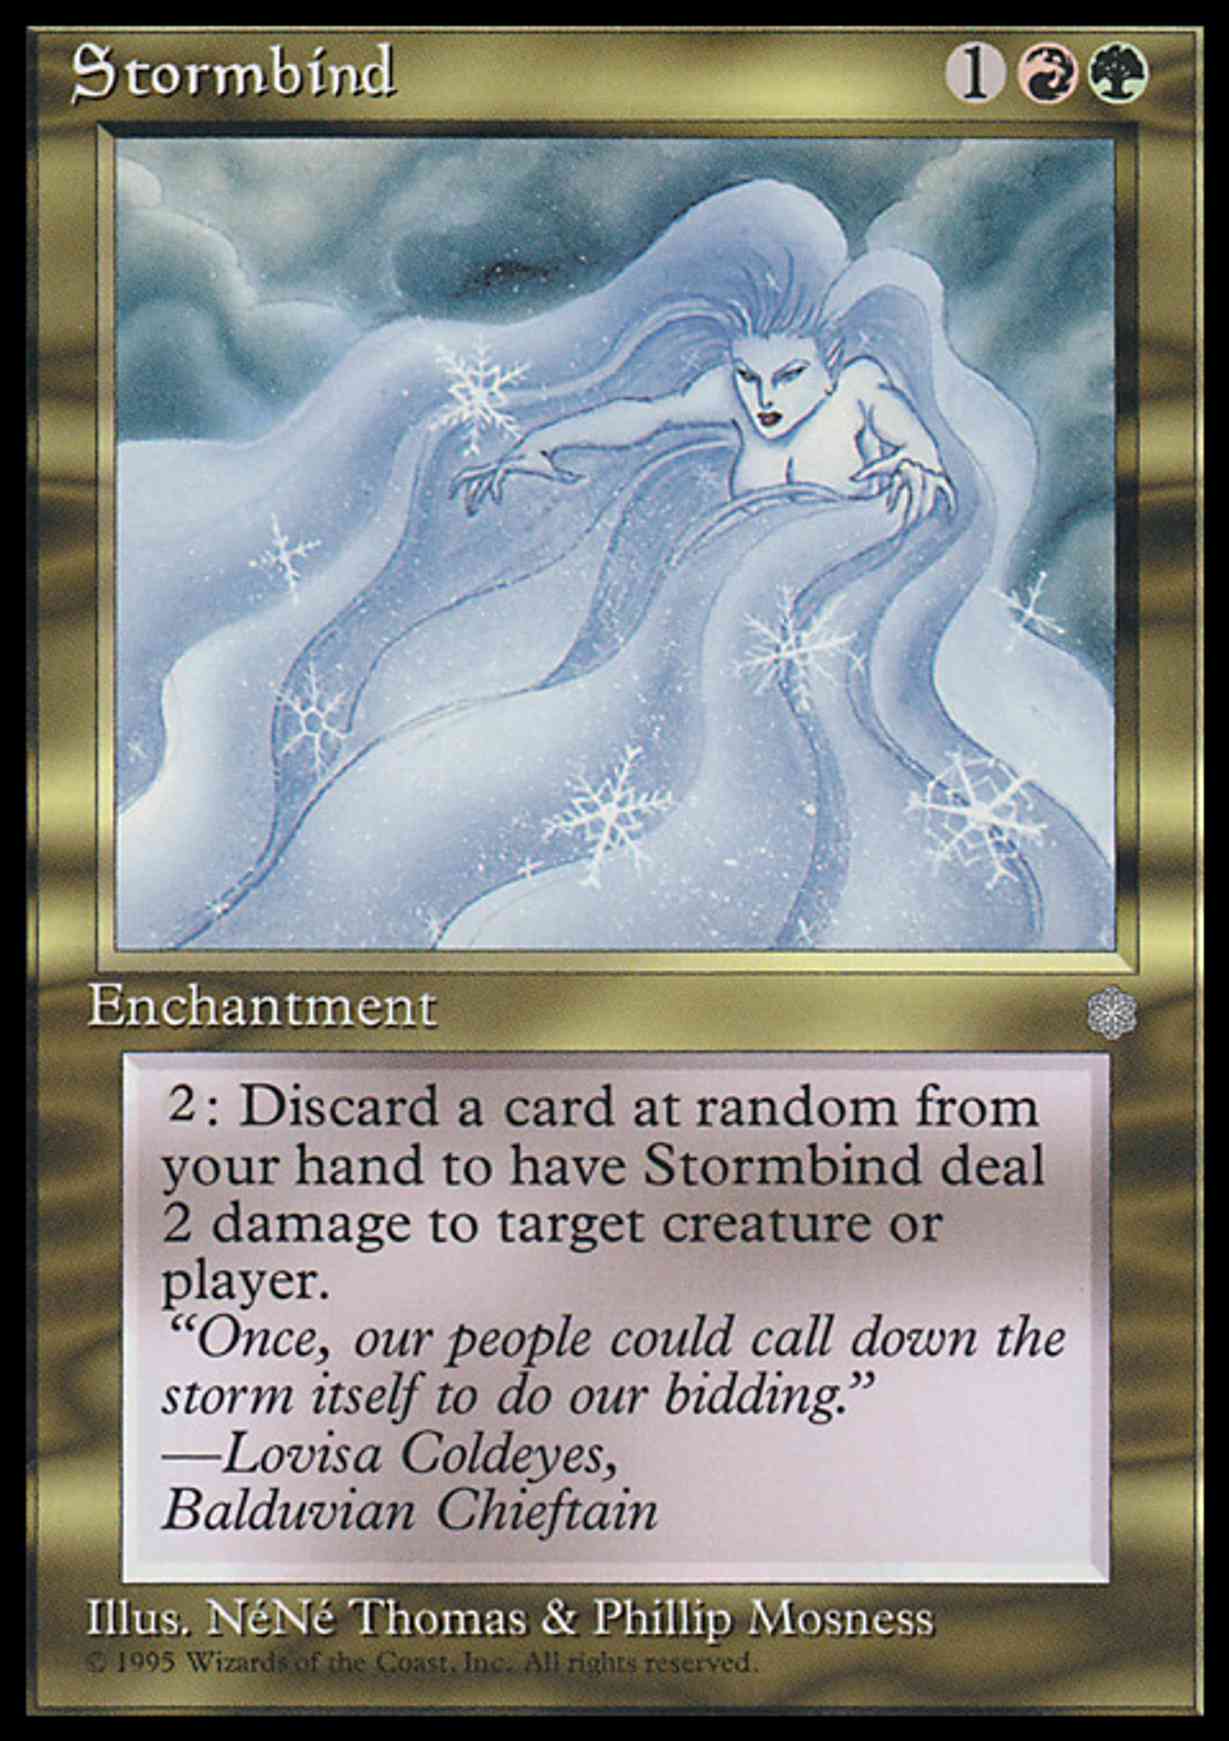 Stormbind magic card front